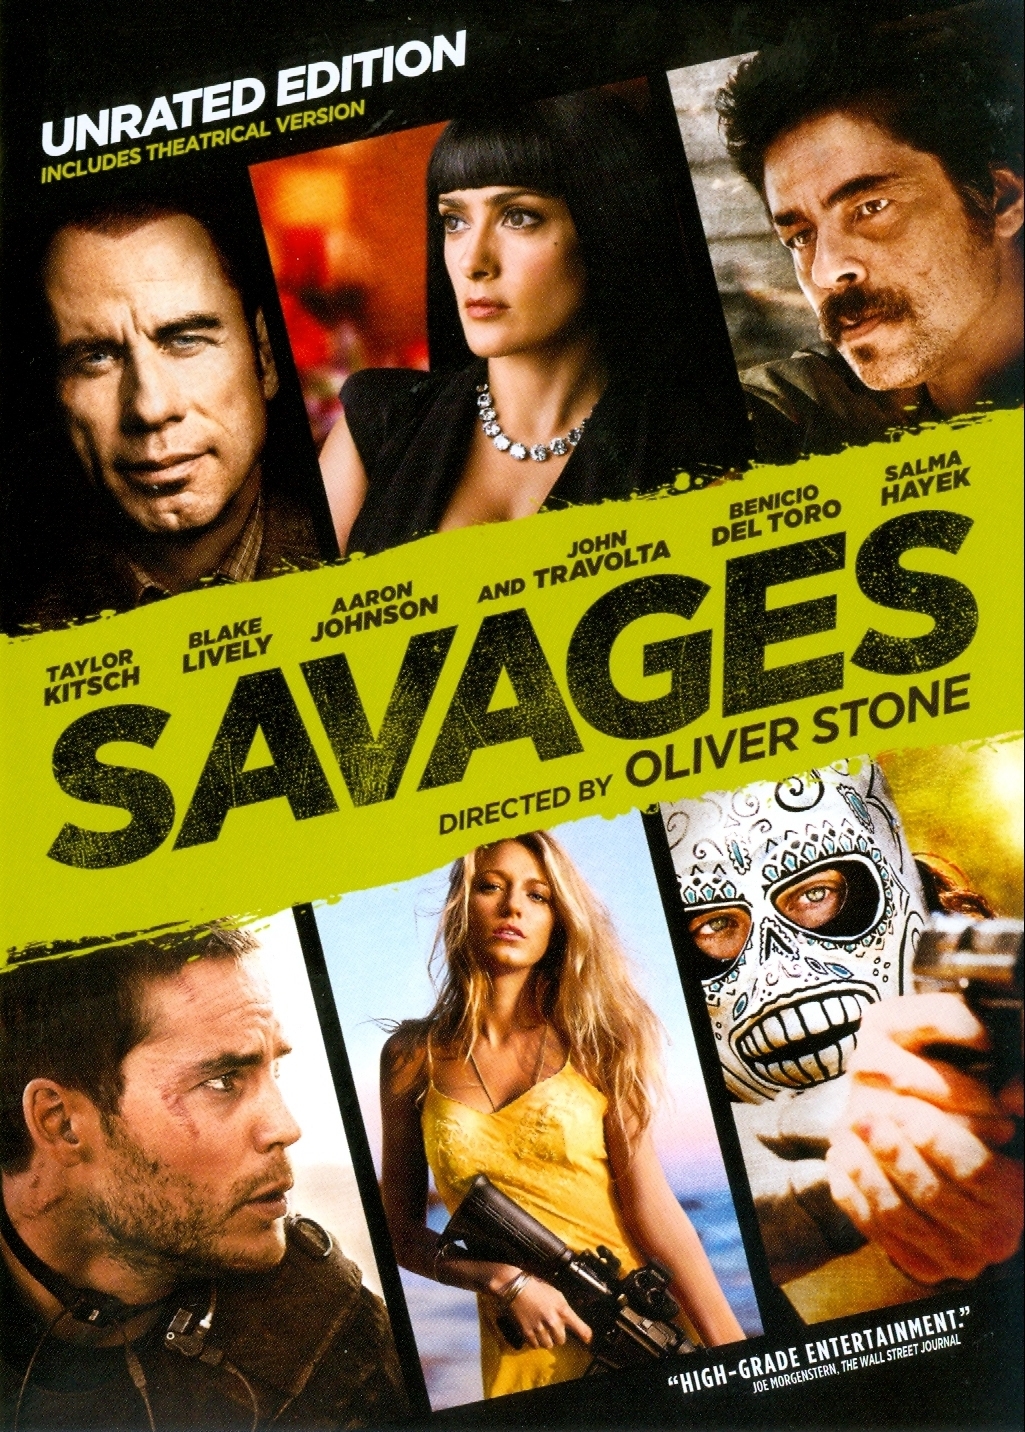 بنیسیو دل تورو در صحنه فیلم سینمایی Savages: The Interrogations به همراه آرون تیلور جانسون، Taylor Kitsch، بلیک لیولی، جان تراولتا و Salma Hayek